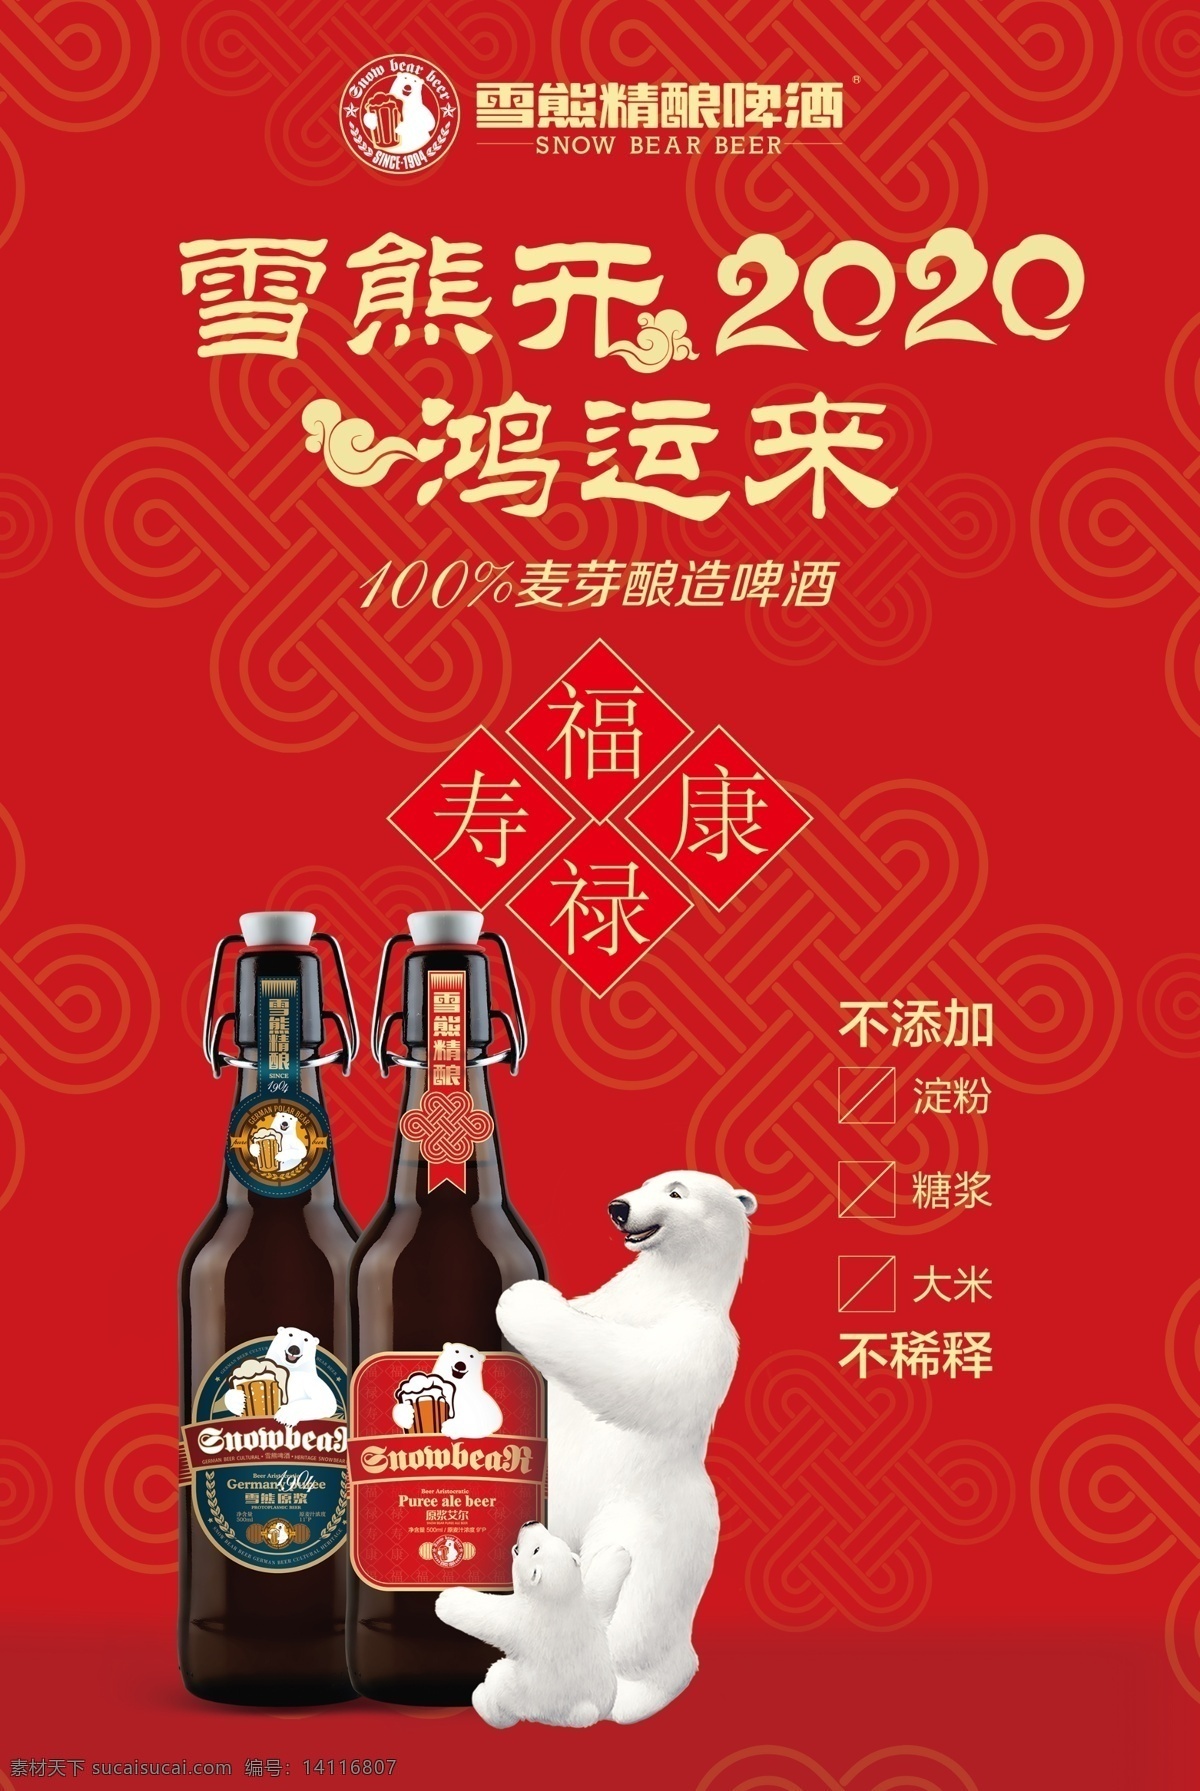 雪熊啤酒 精 酿 2020 鸿运 雪熊 啤酒 宣传页 dm单 啤酒单页 雪熊宣传页 红底图 分层 名片卡片